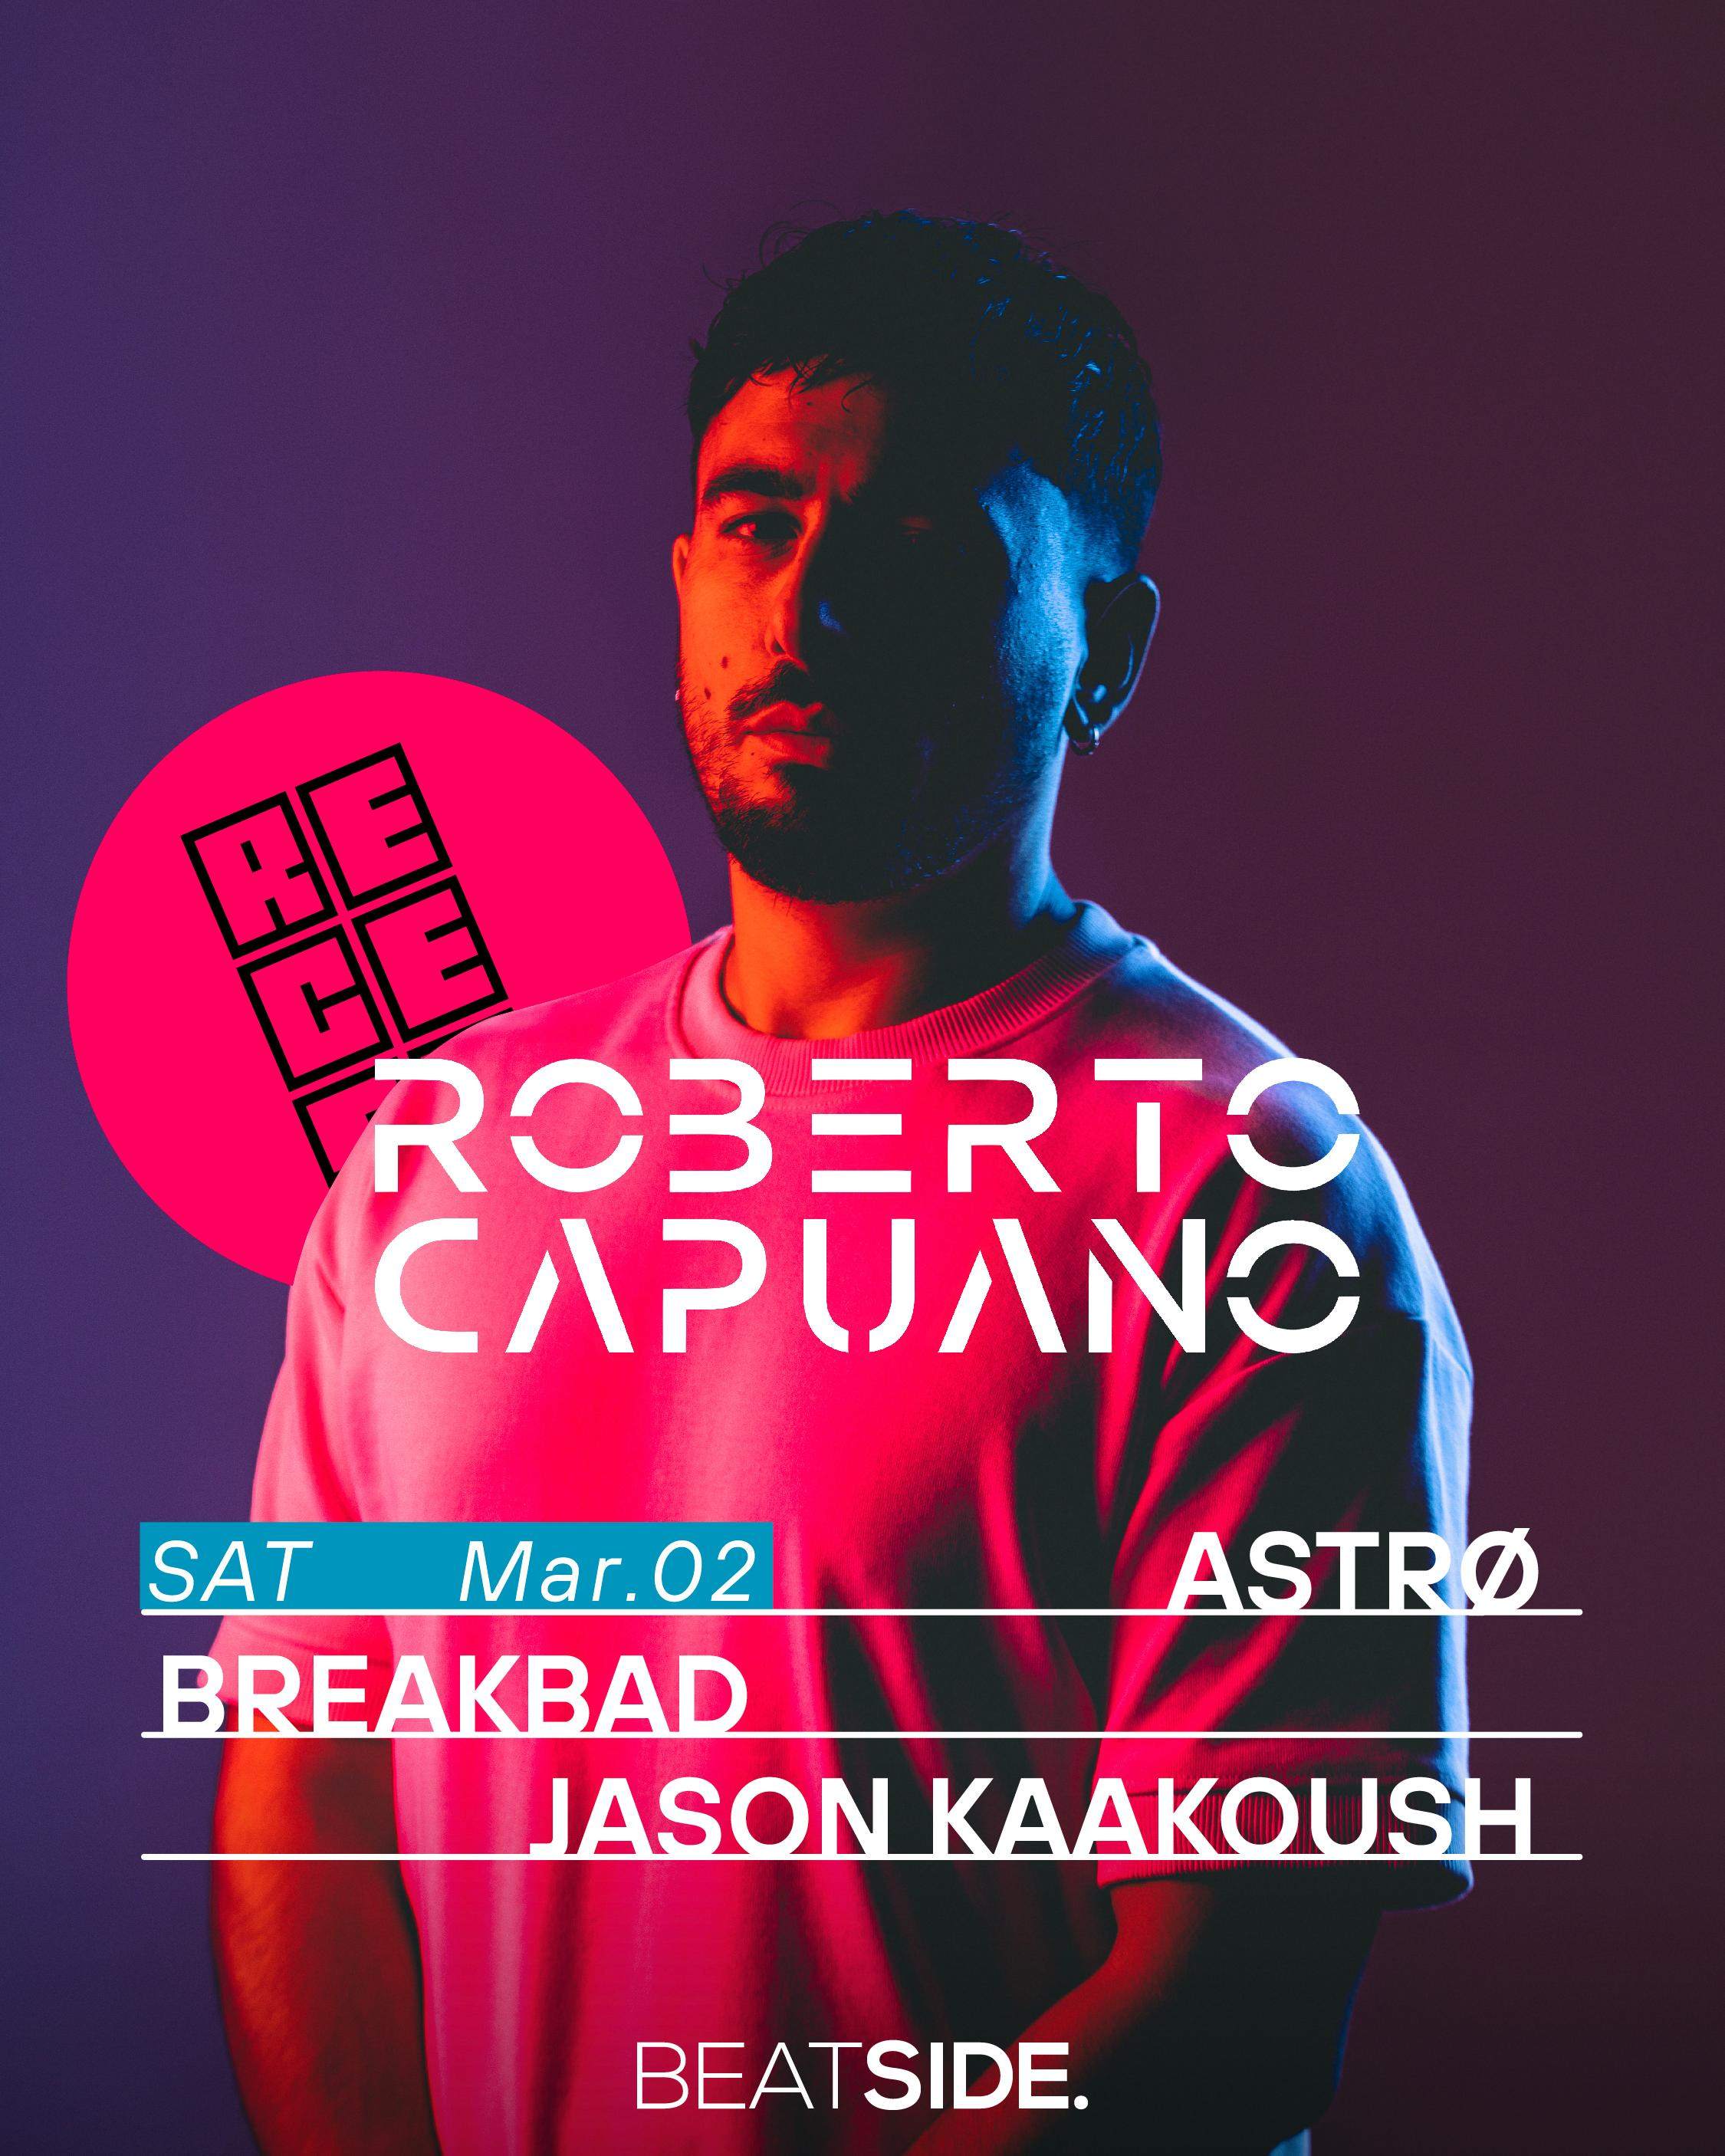 Recess x Roberto Capuano - Jason Kaakoush, Astrø & Breakbad - フライヤー表